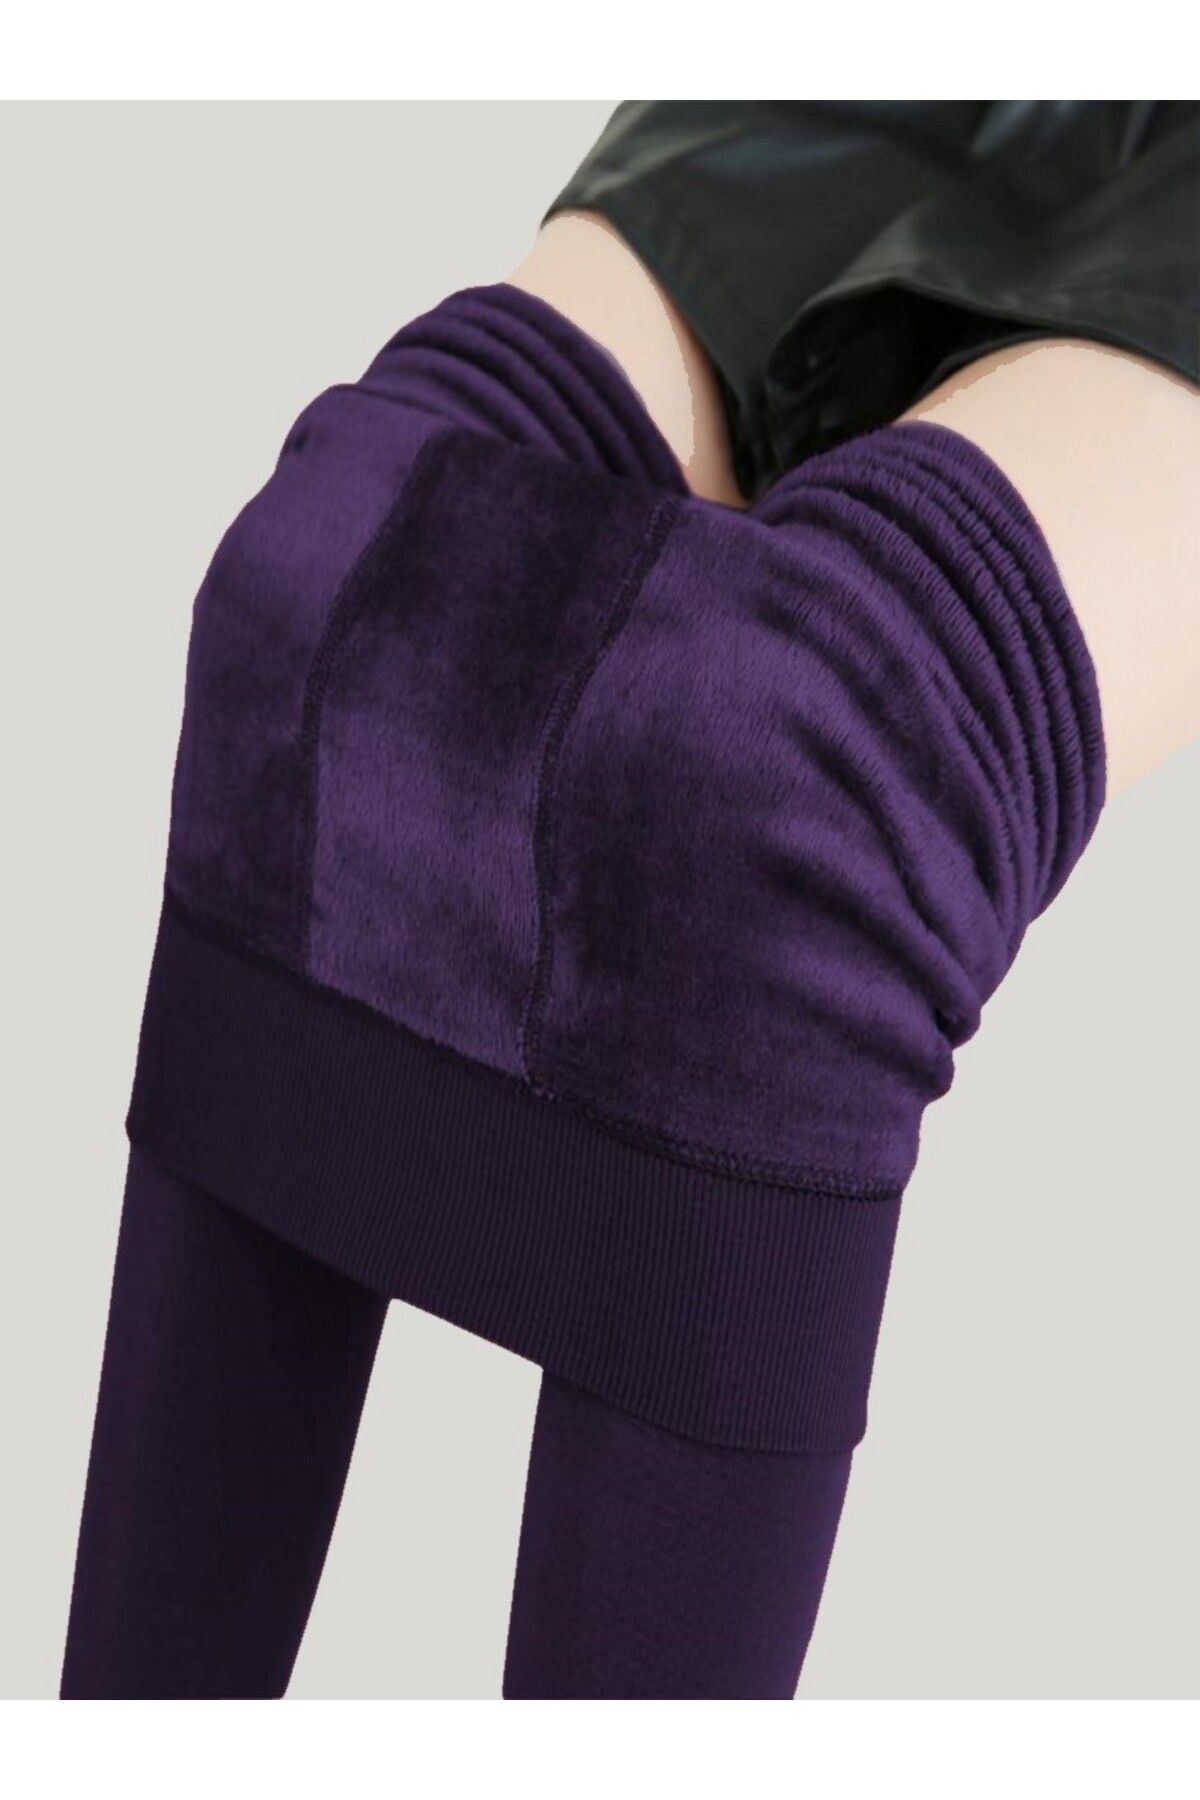 MİSTİRİK Ravena Model Korse Etkili Iceltici Içi Tüylü Pelüşlü Sıcak Pelüşlü Külotlu Çorap Mor Renk